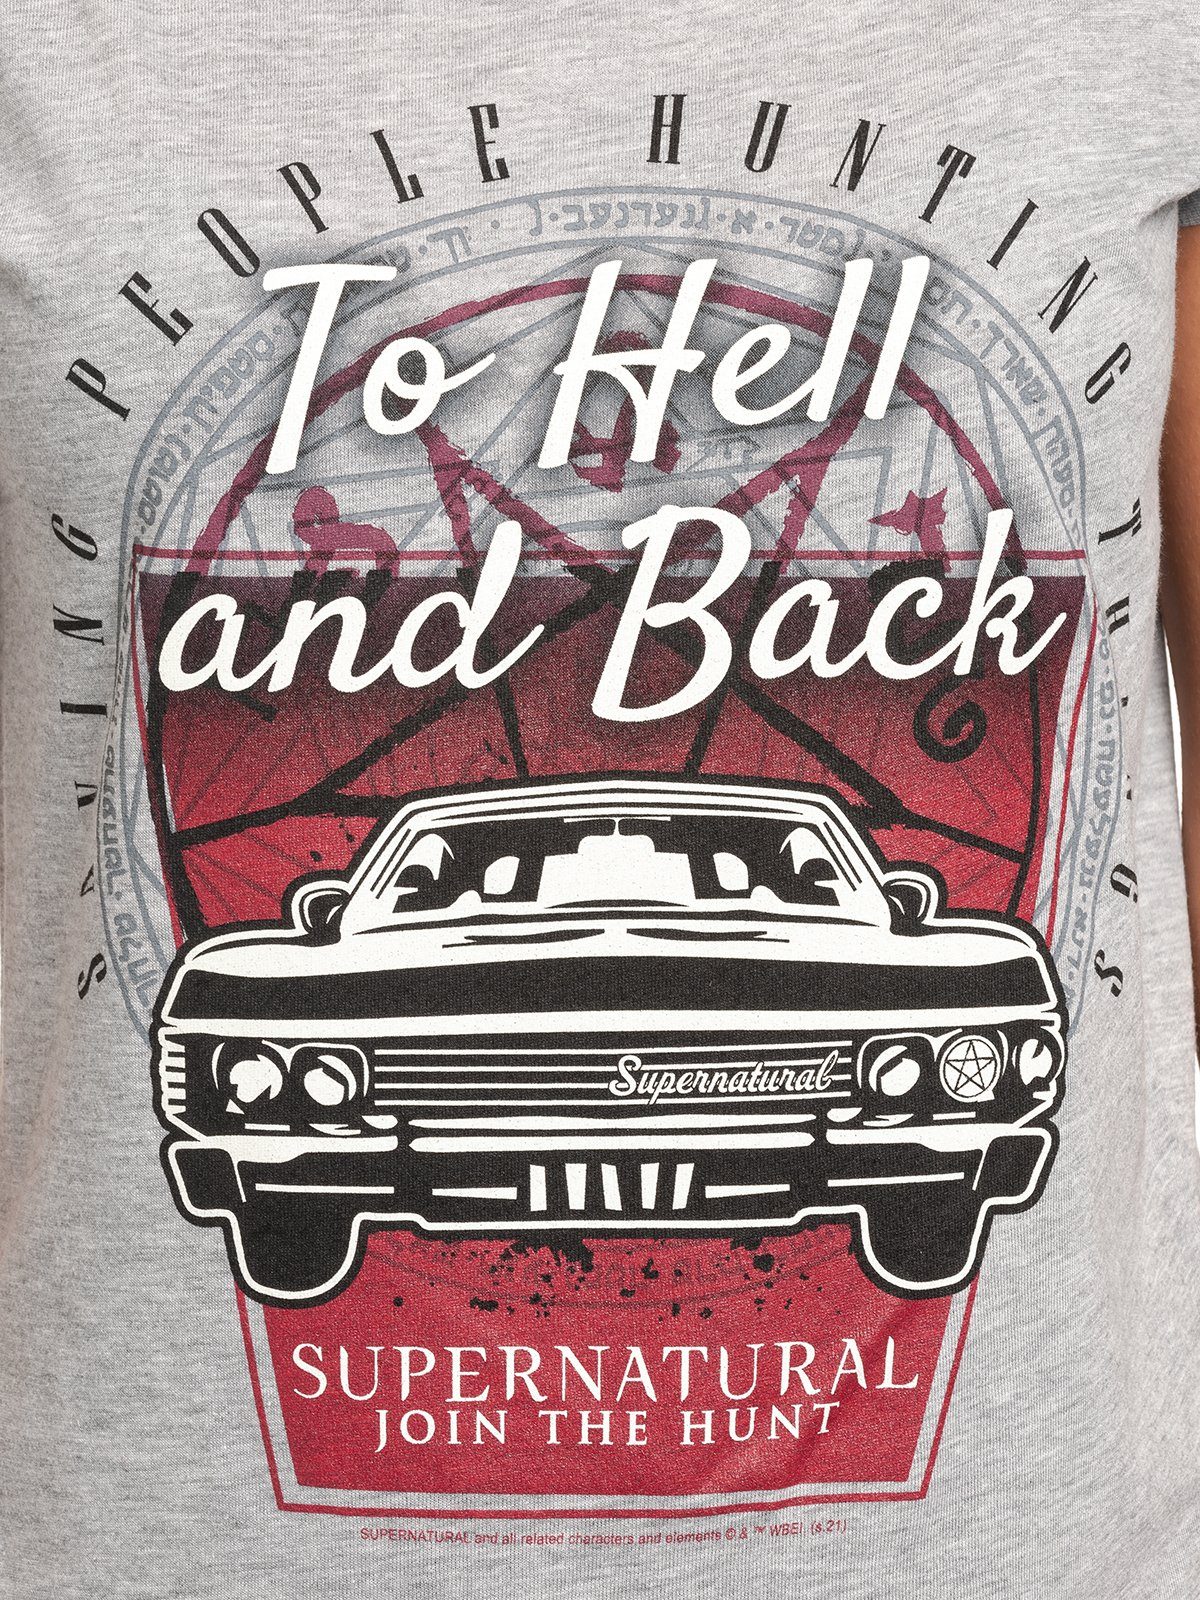 Damen Shirts Warner T-Shirt Supernatural Hell and Back